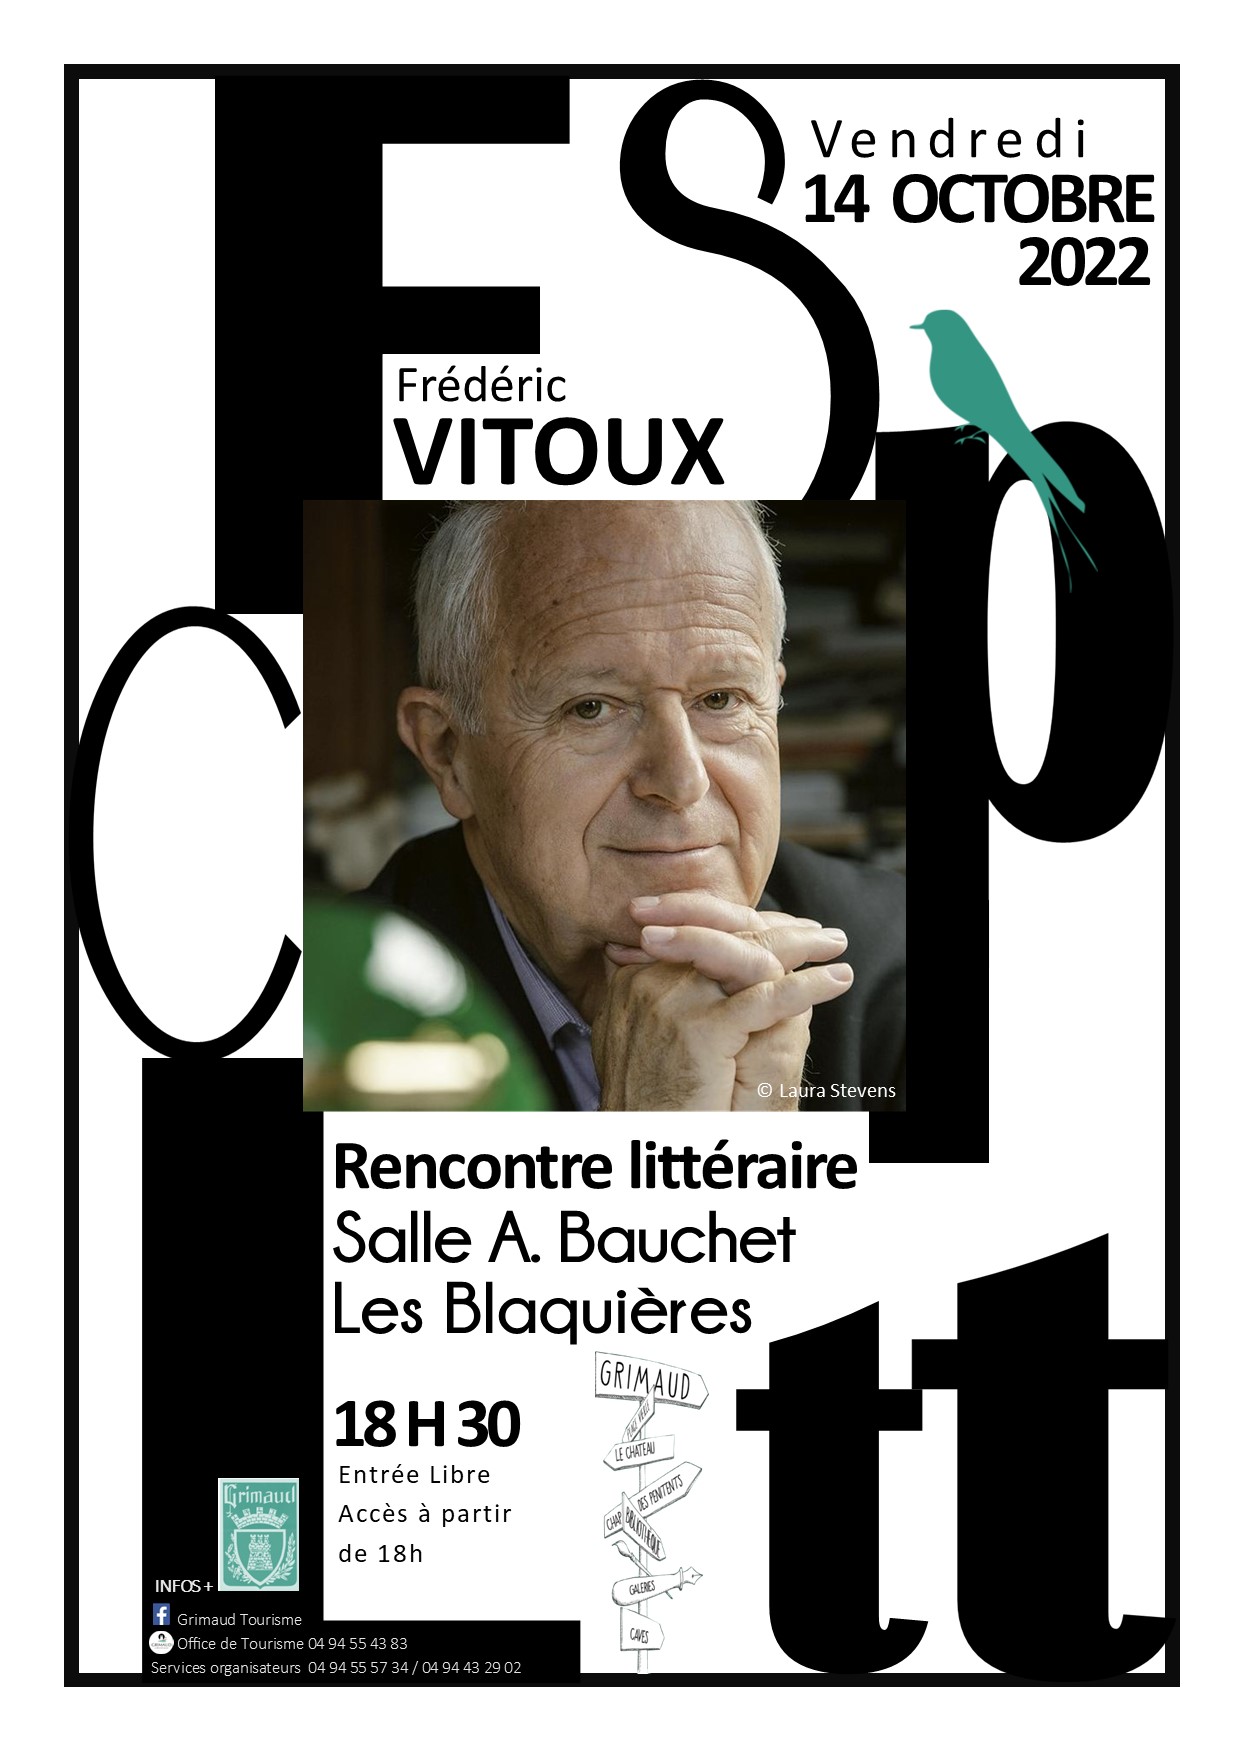 Vendredi 14 octobre 2022 : Escapade littéraire avec Frédéric VITOUX